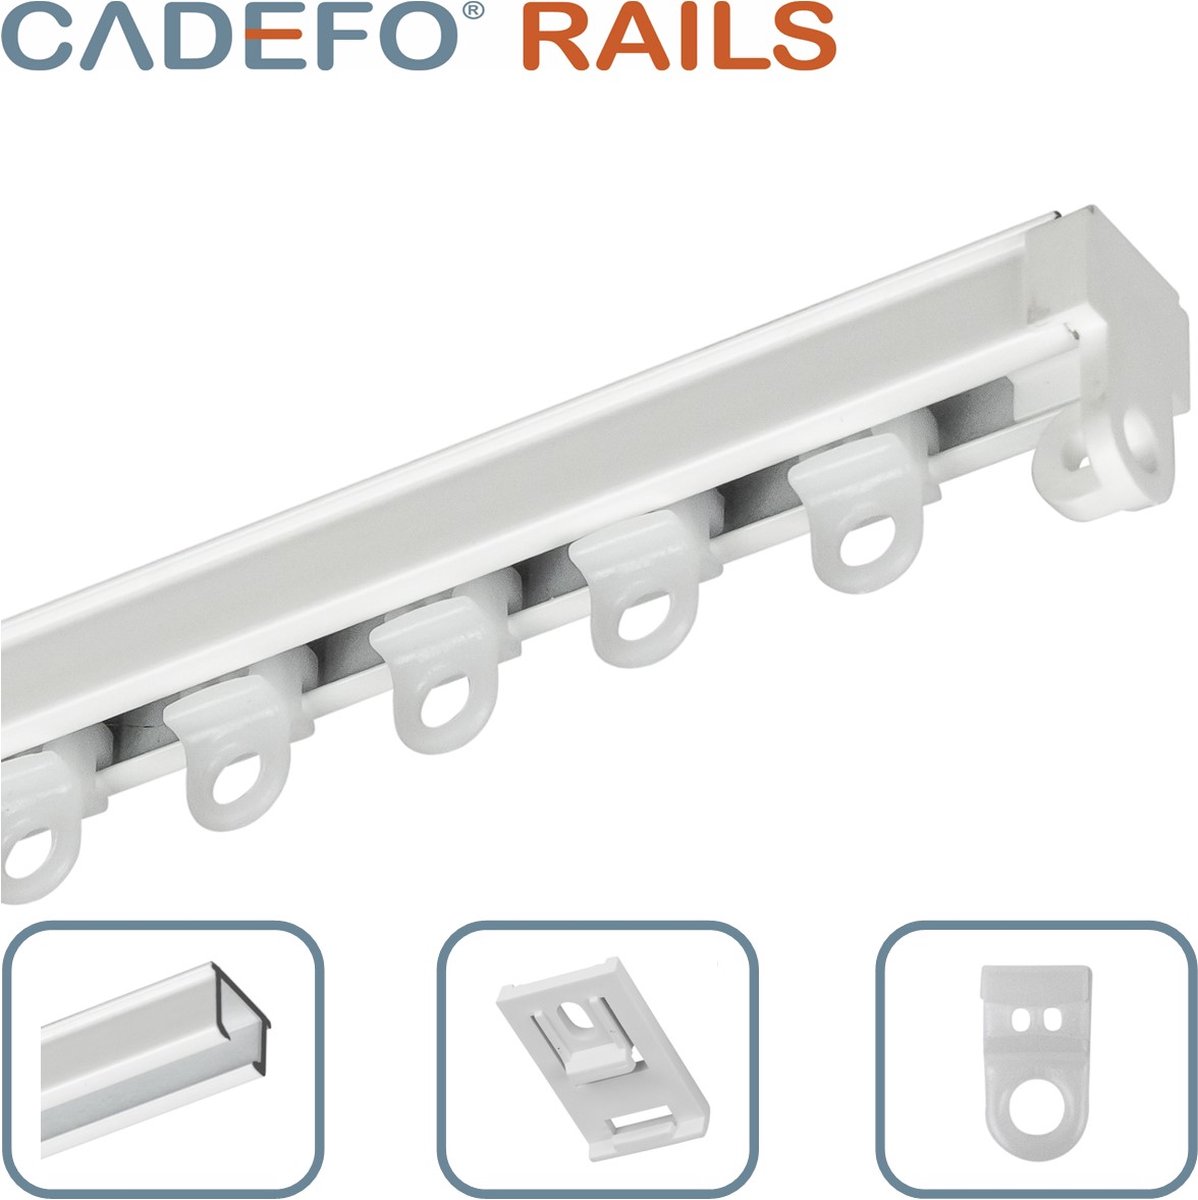 CADEFO RAILS (551 - 600 cm) Gordijnrails - Compleet op maat! - UIT 1 STUK - Leverbaar tot 6 meter - Plafondbevestiging - Lengte 568 cm